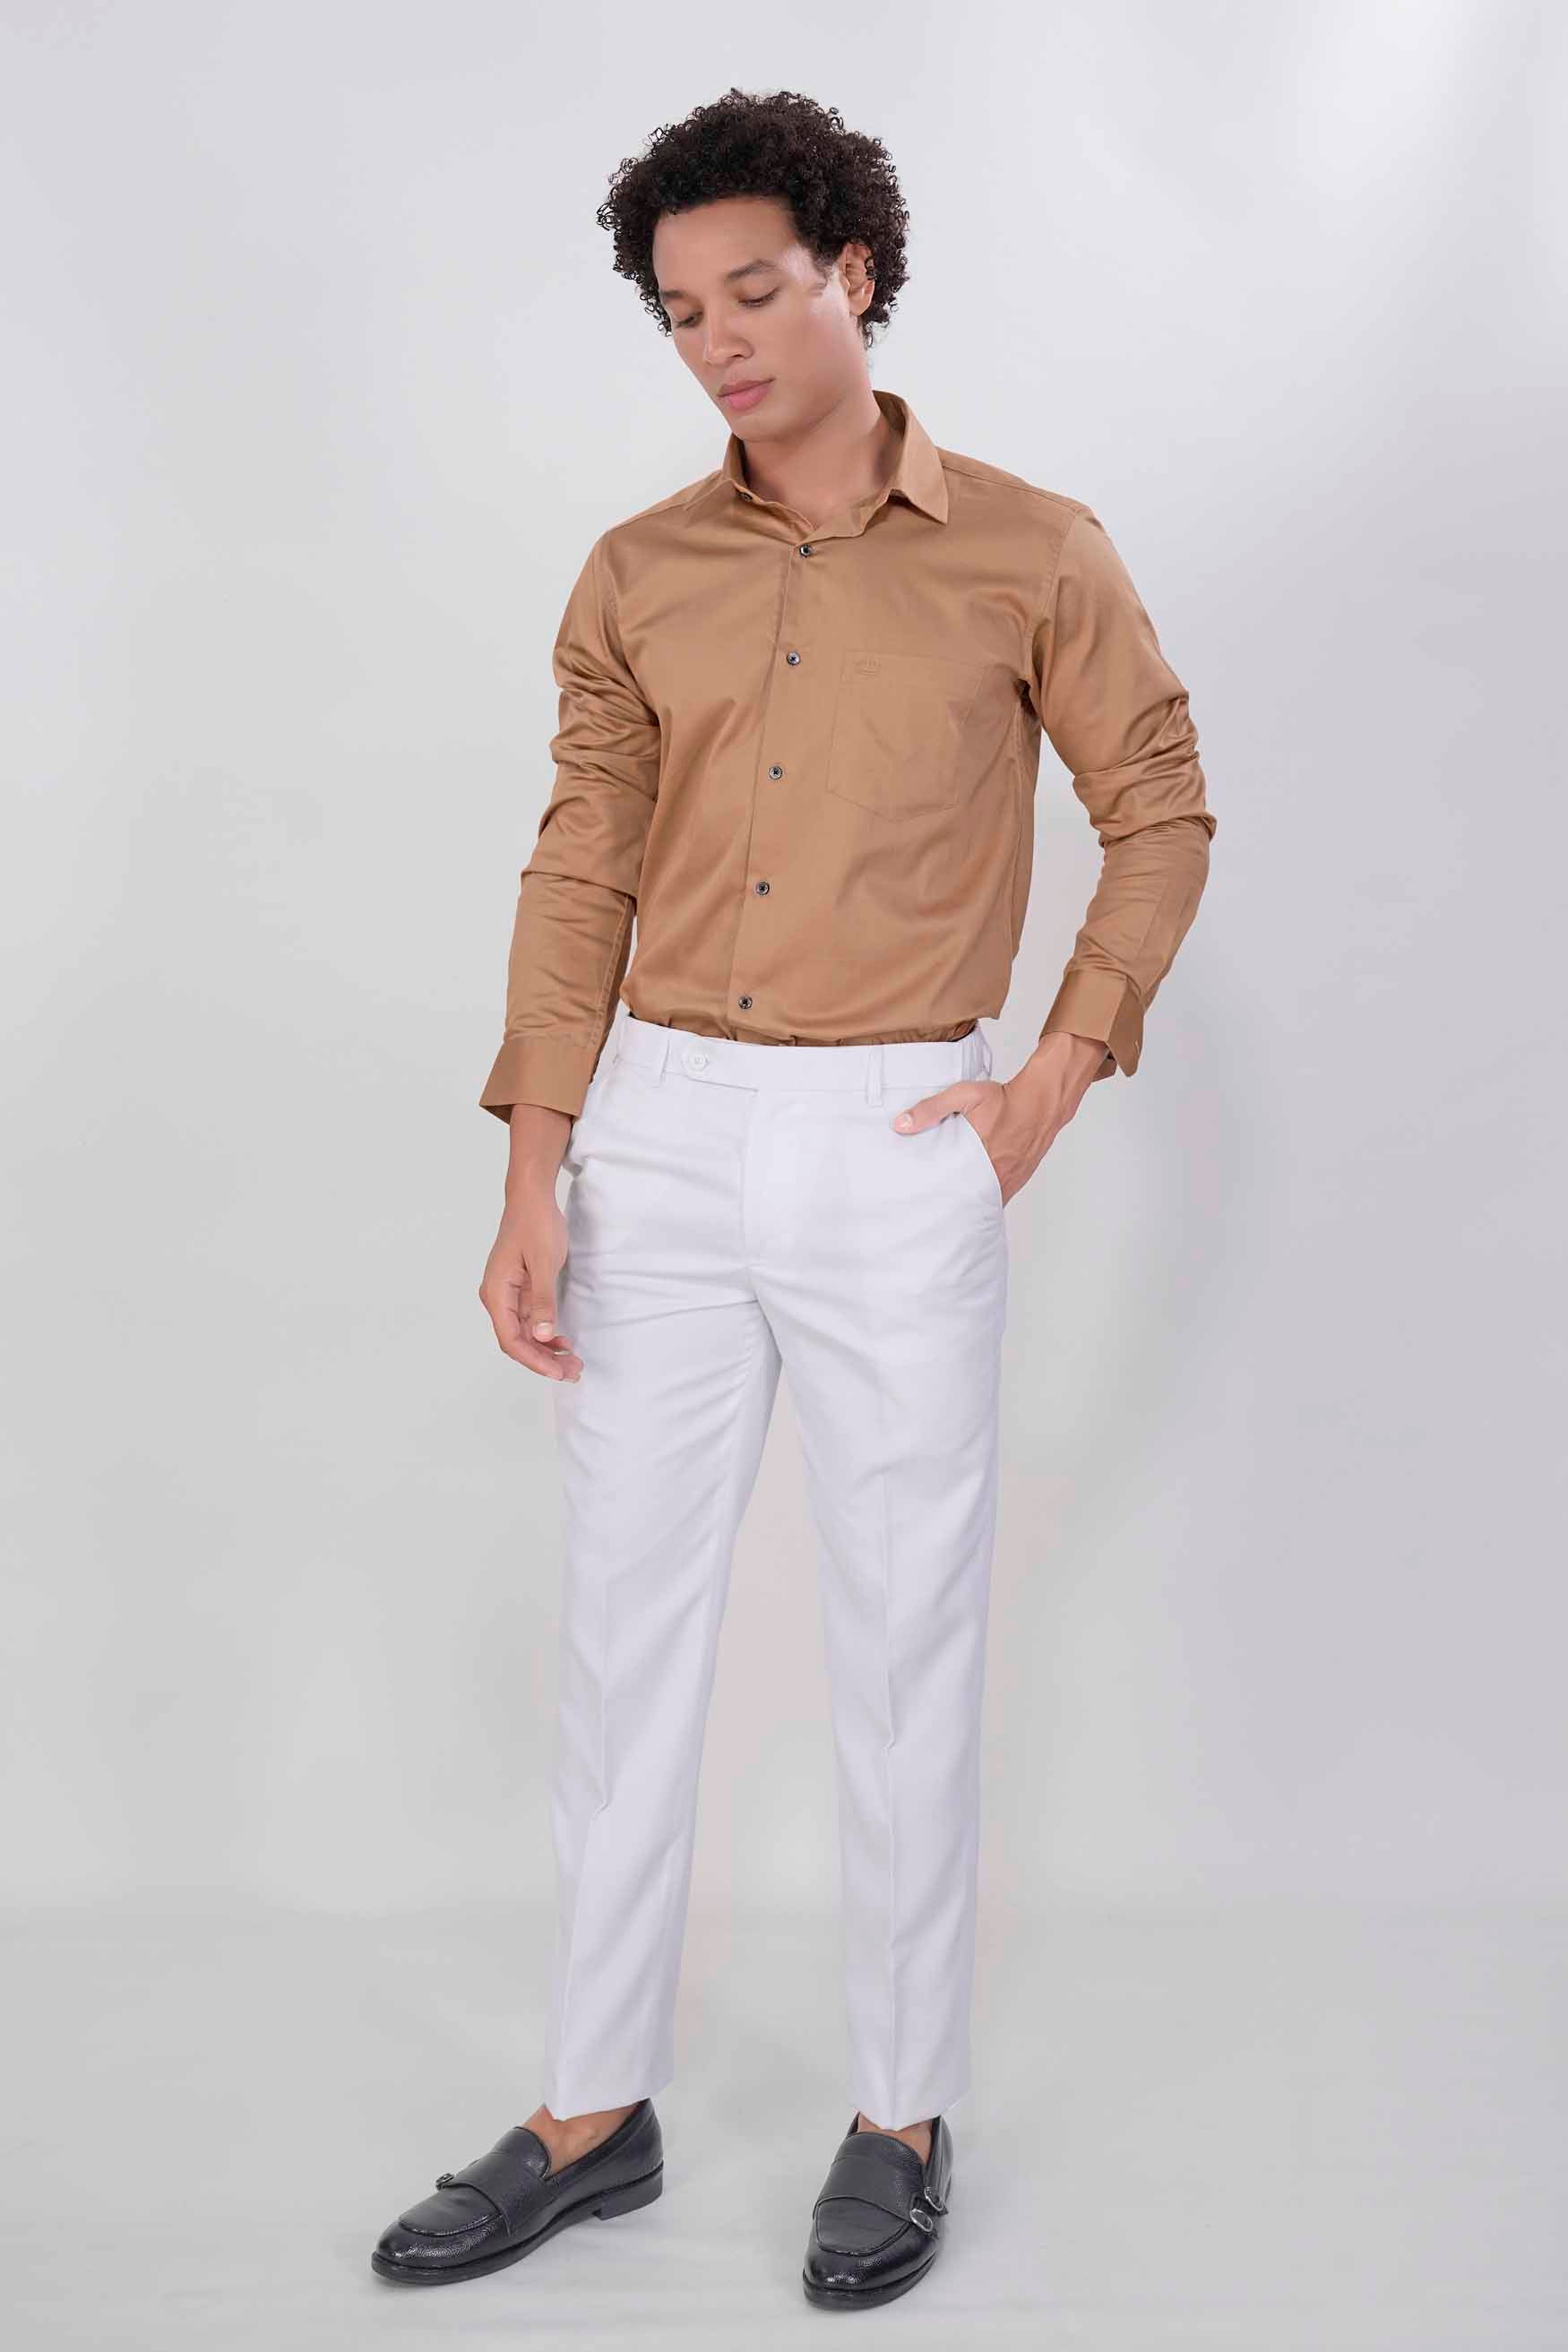 Mocha Brown Subtle Sheen Super  Soft Premium Cotton Shirt